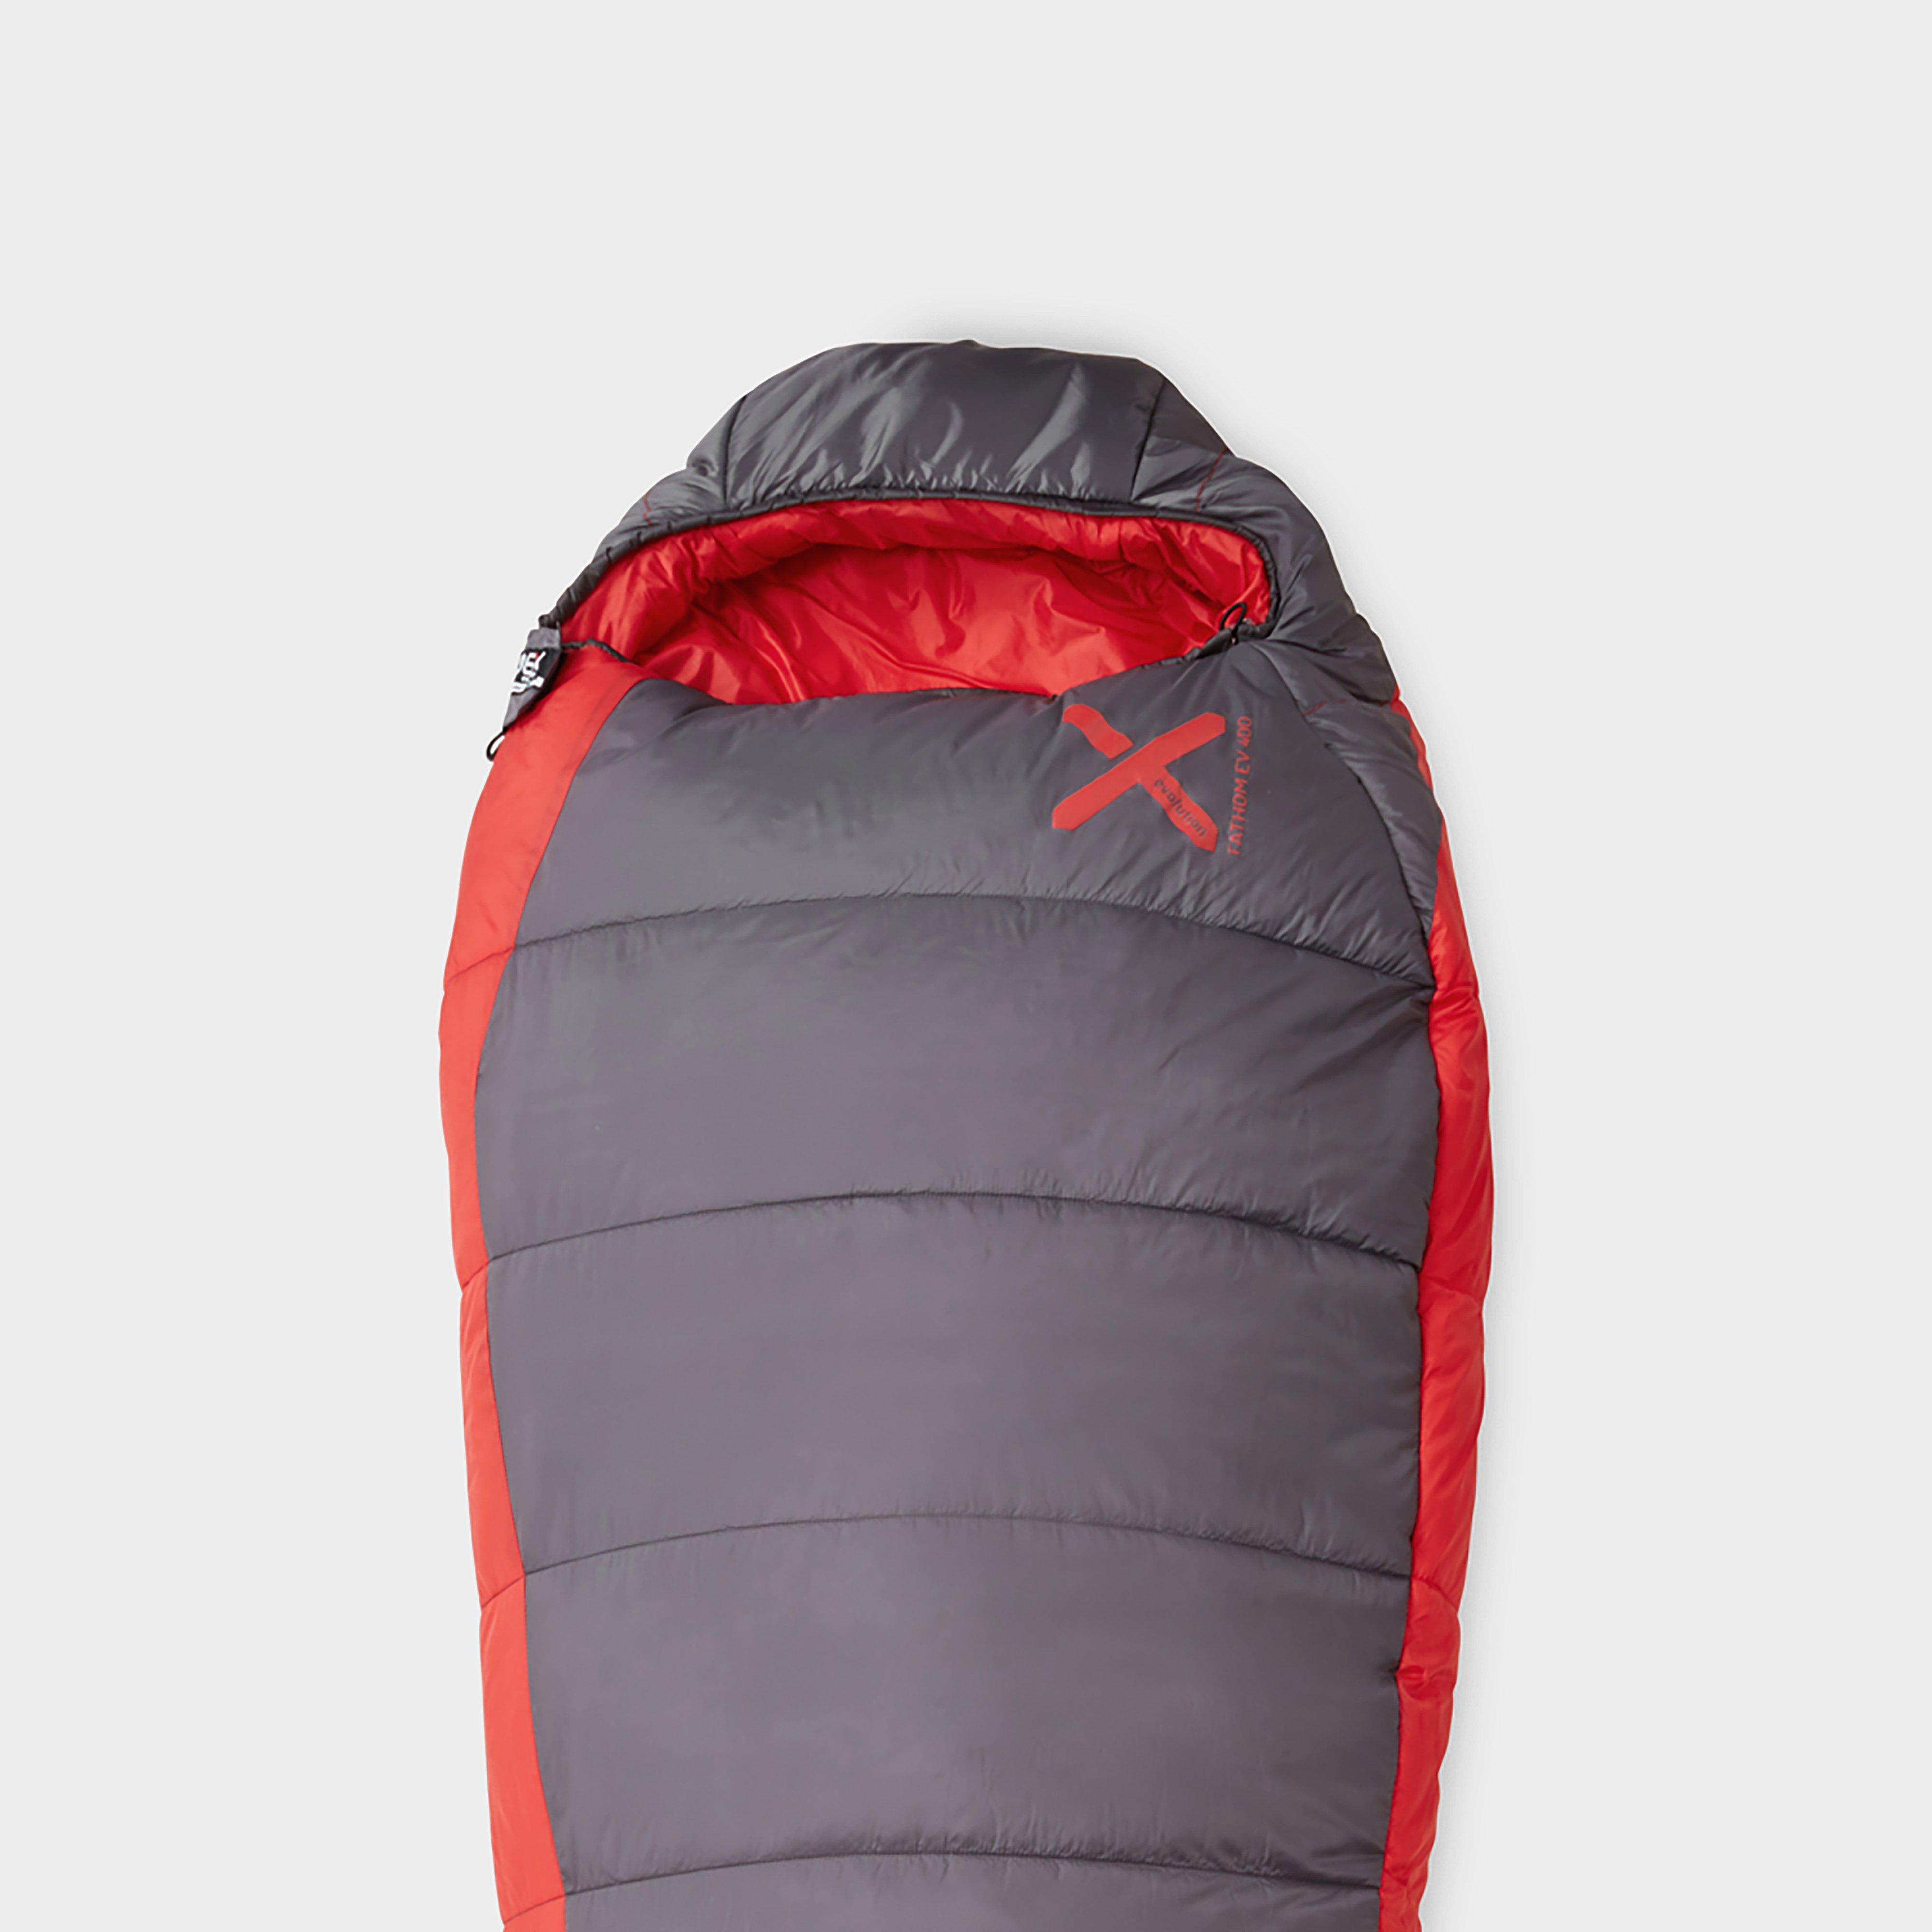 Oex Fathom Ev 400 Sleeping Bag - Grey/red  Grey/red